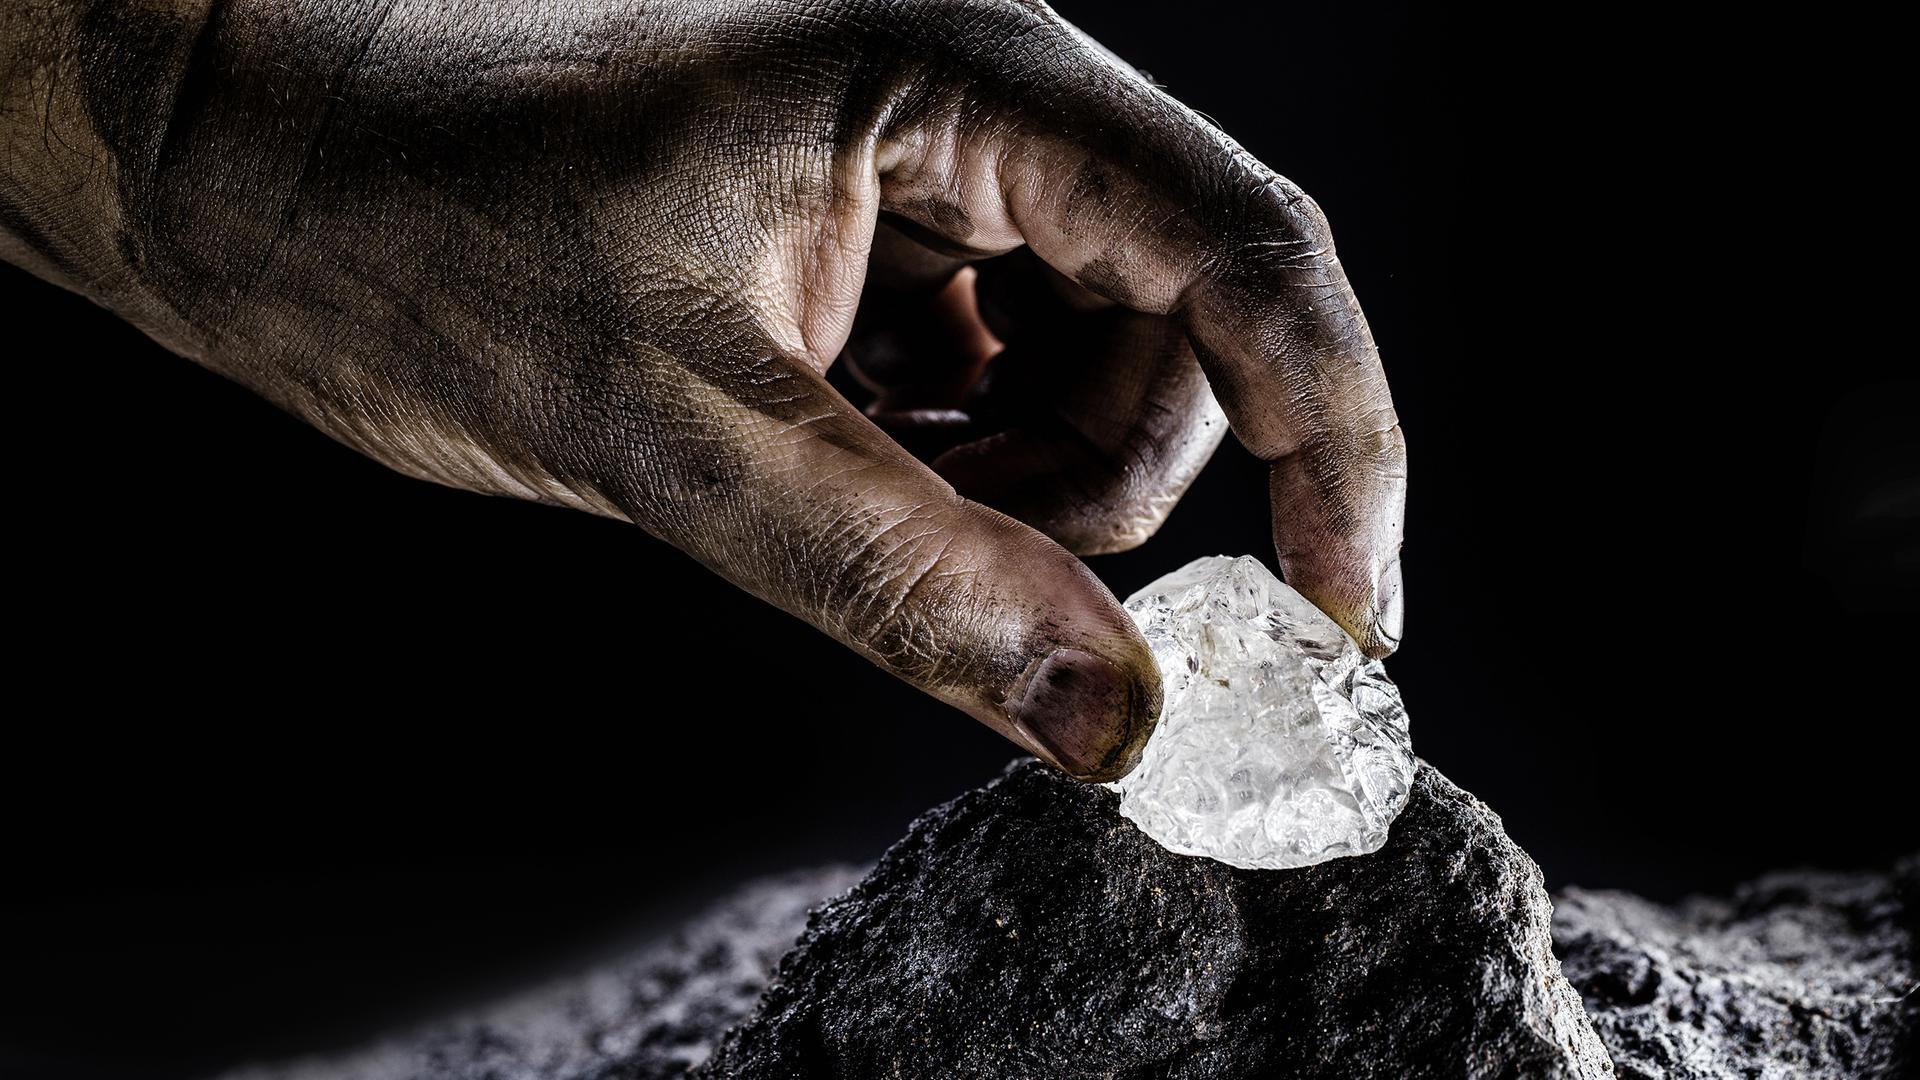 Eine Hand greift einen weiss schimmernden Stein, einen Petalit. Petalit ist ein selten vorkommendes Mineral– eine wichtige Lithiumquelle.